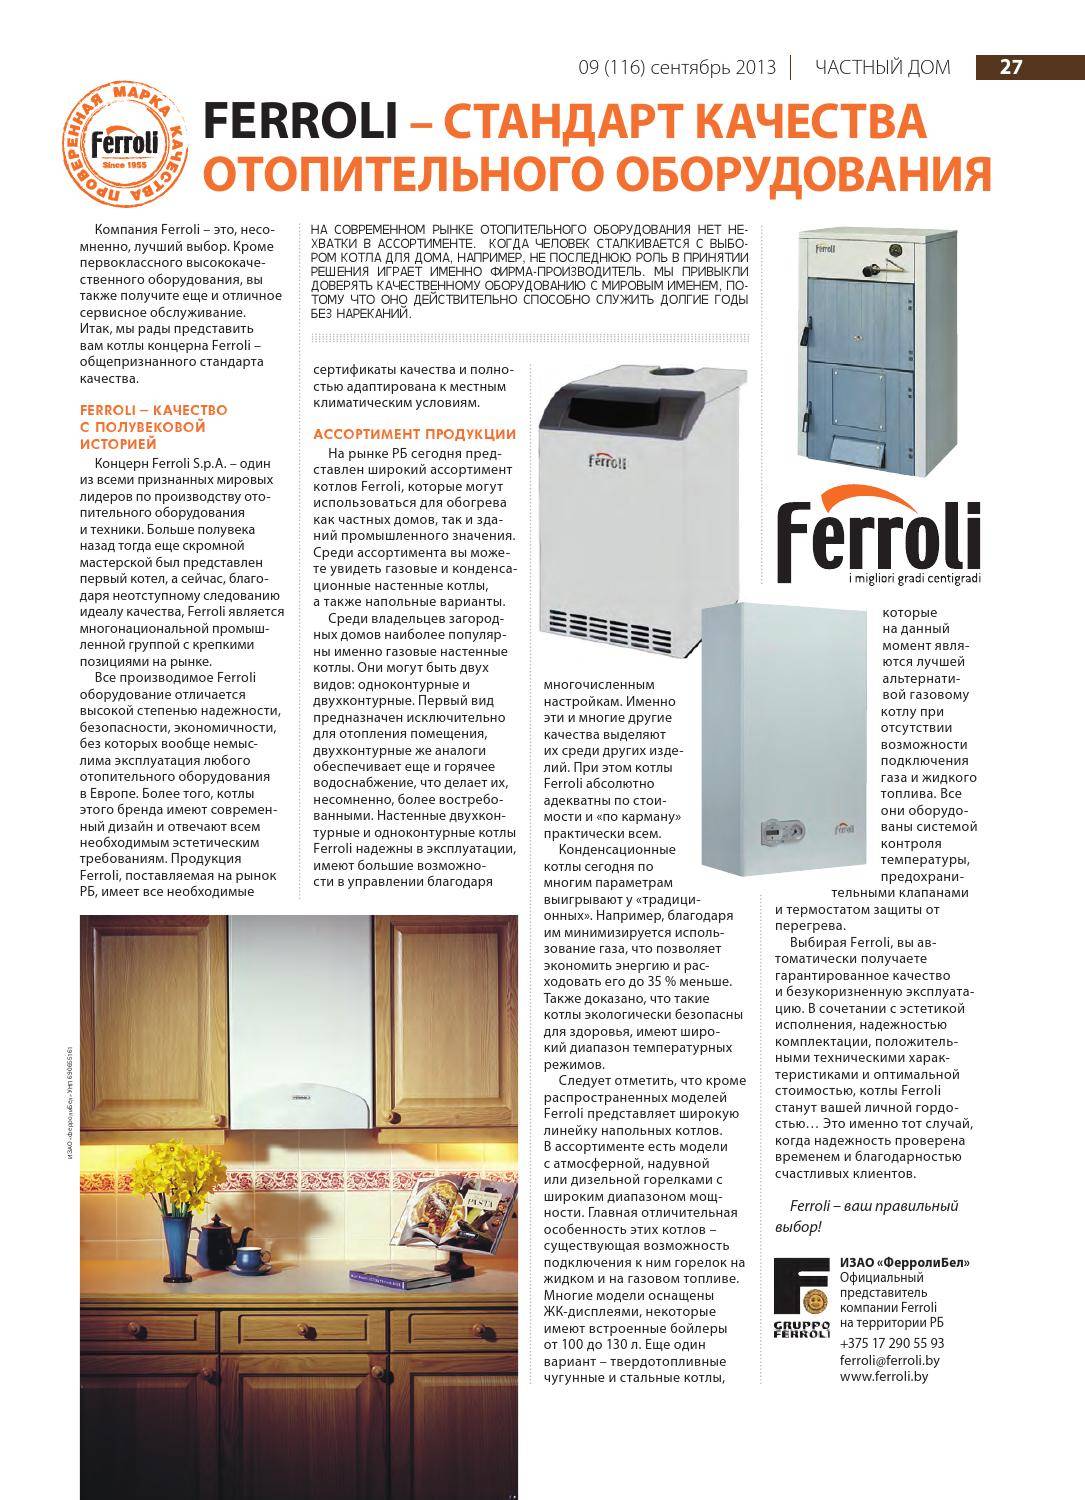 Котел «Ферроли»: характеристики оборудования, популярные модели и цены